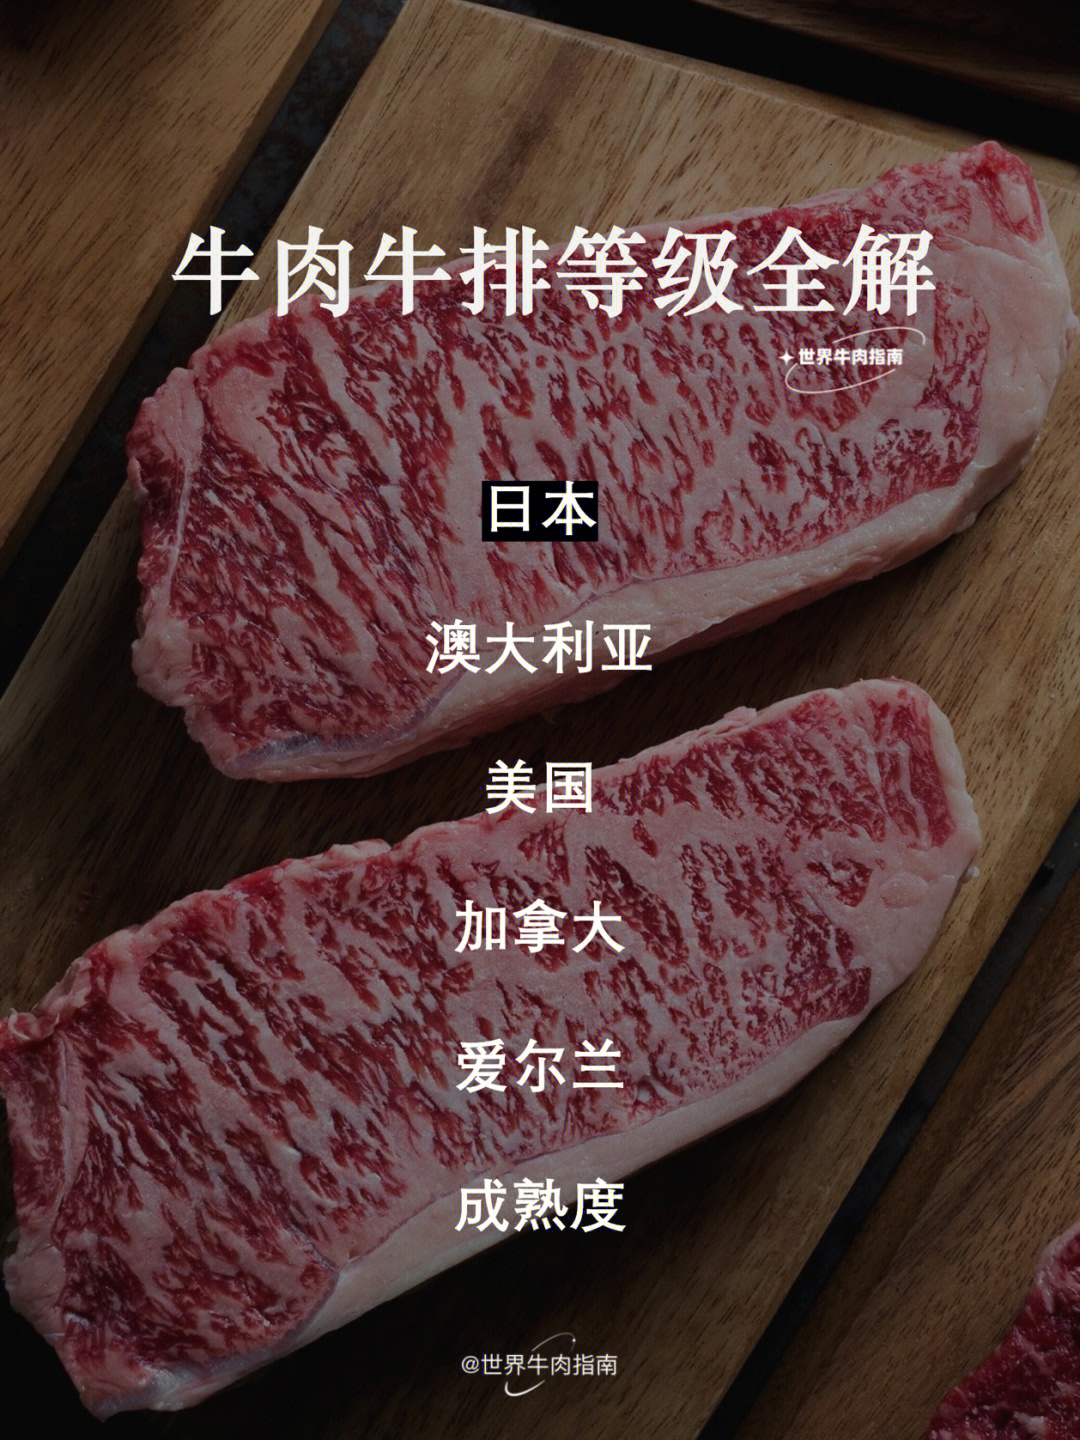 日本牛肉等级划分图片